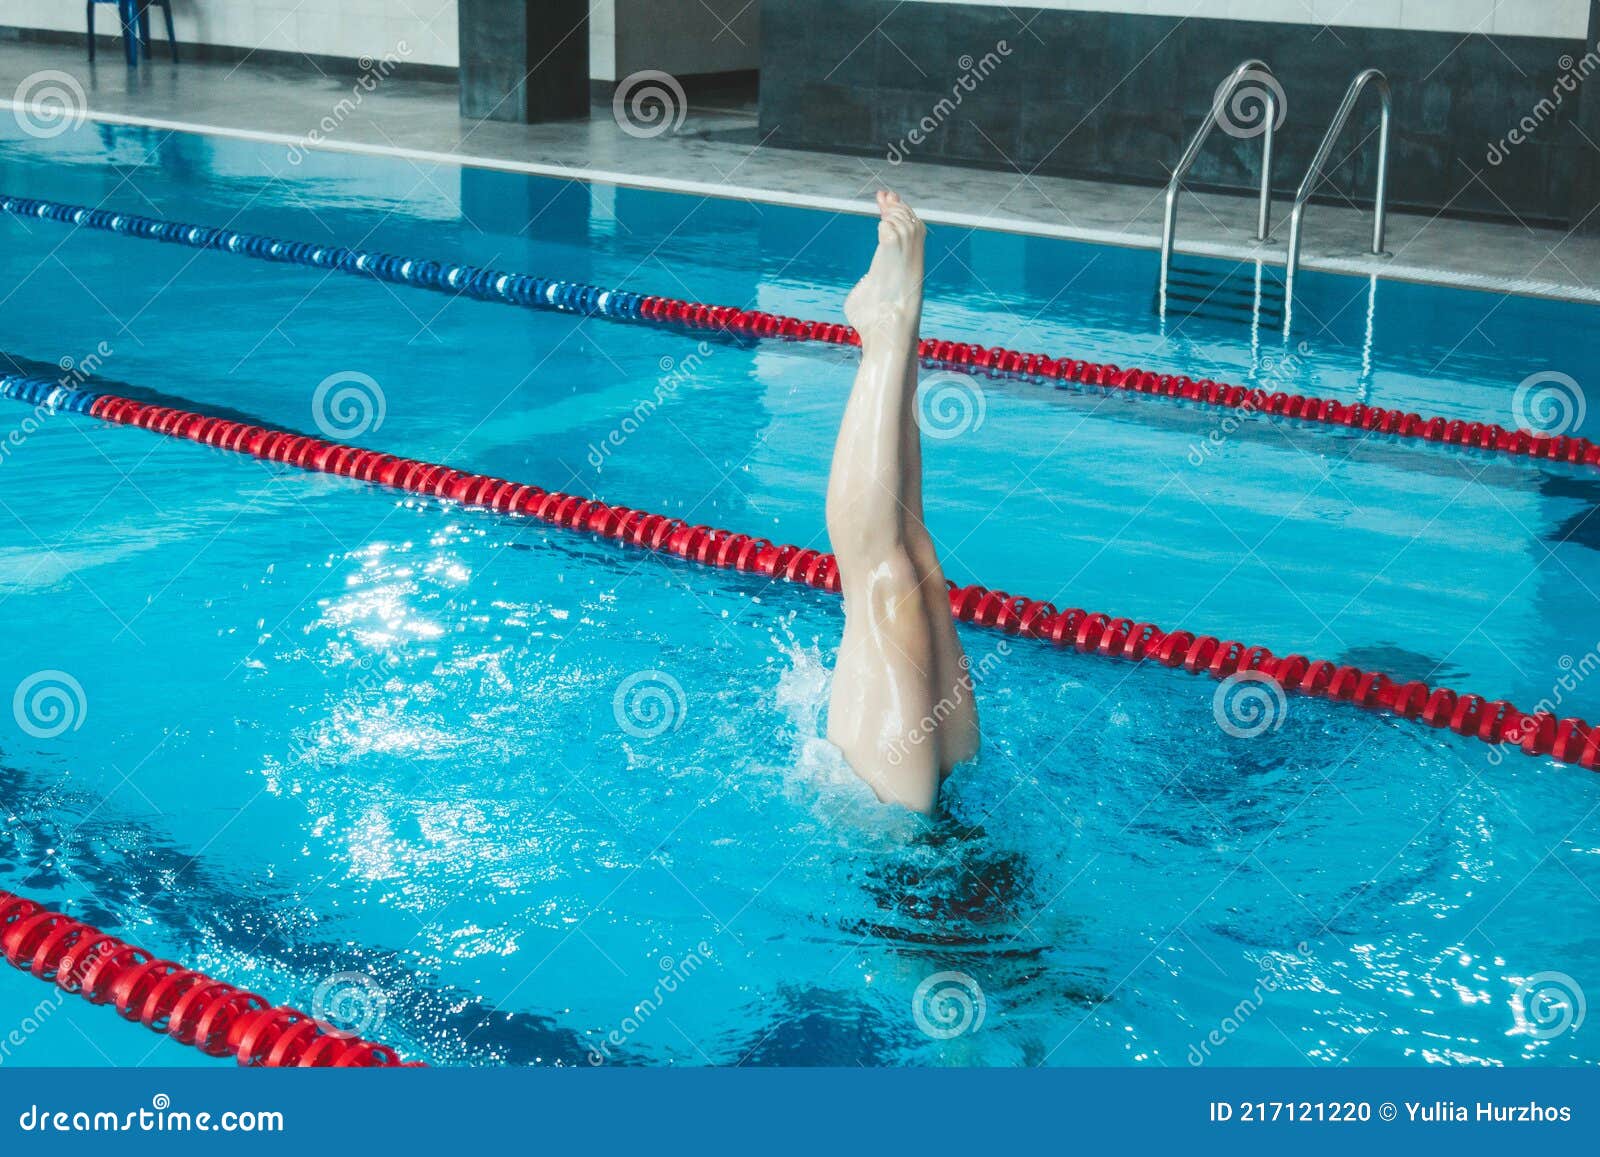 花样游泳运动员在游泳池里独自训练. 在水里倒着训练. 腿从水里偷看. 库存照片 - 图片 包括有 女性, 灿烂: 217121766